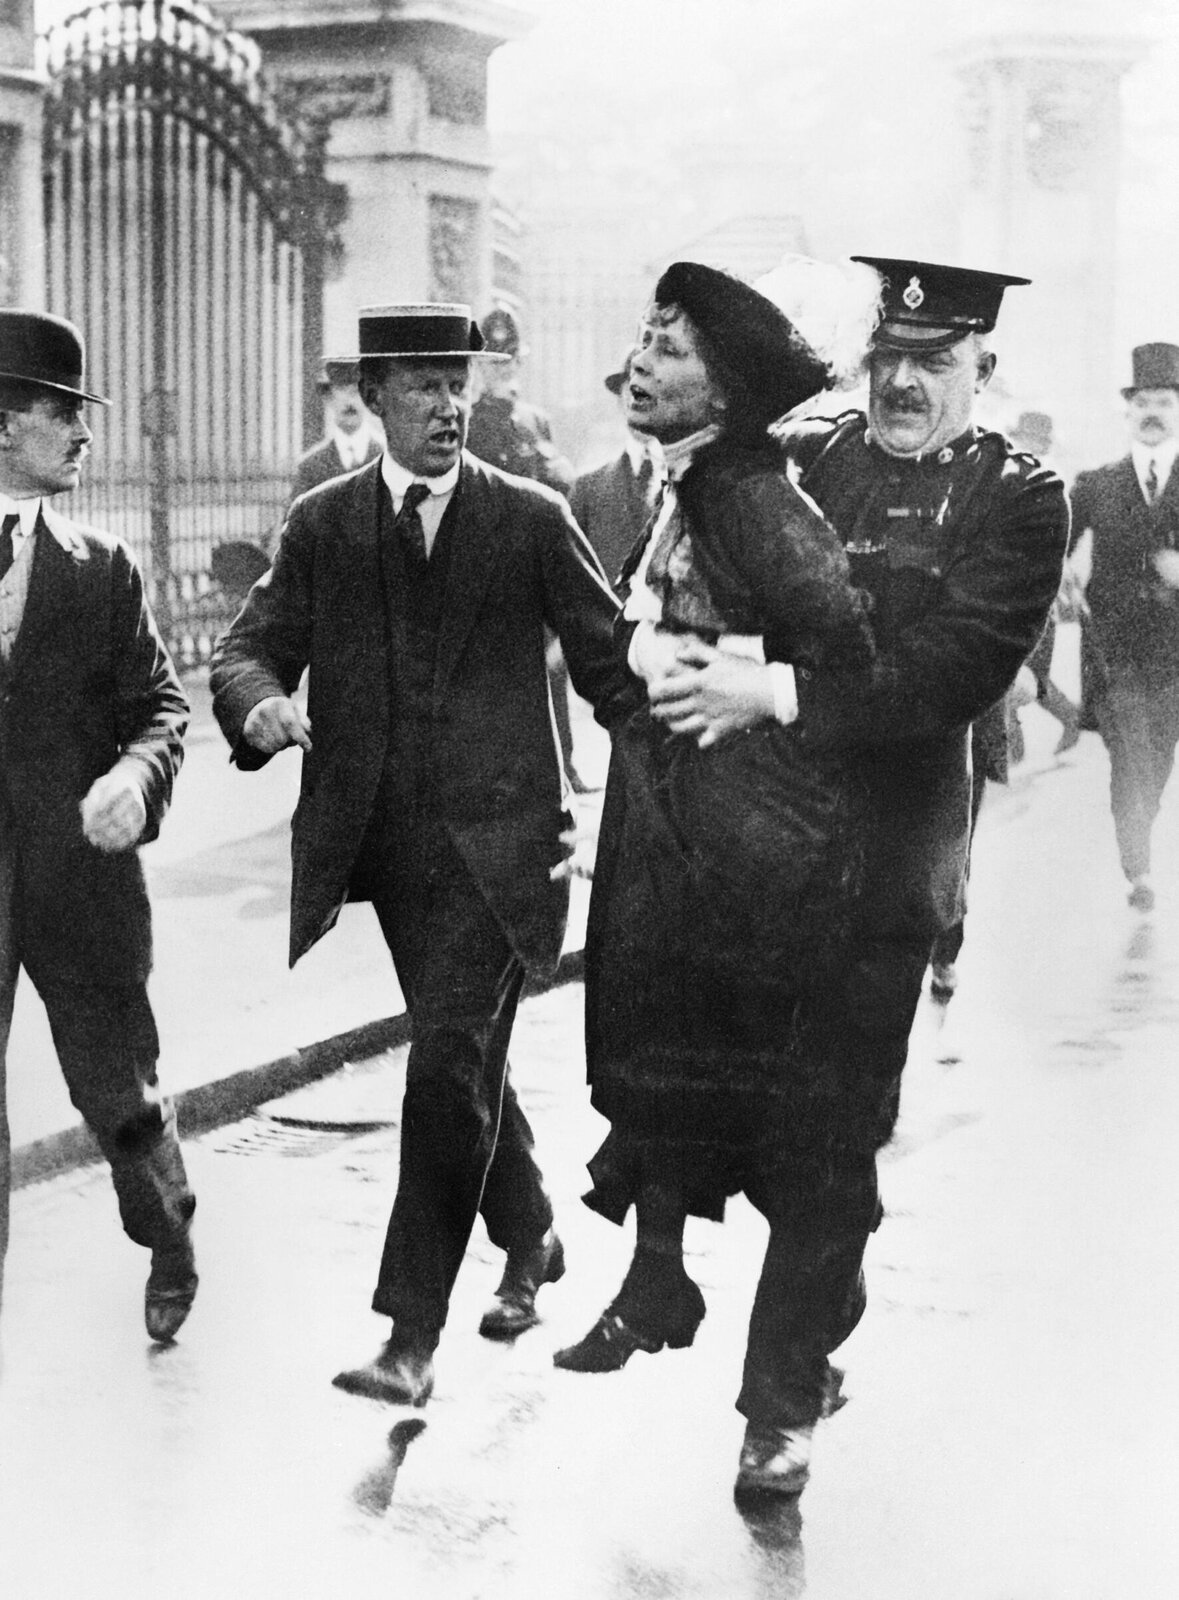 Na zdjęciu ośmiu mężczyzn i jedna kobieta, bohaterka zdjęcia. To Emmeline Pankhurst, wpływowa liderka ruchu sufrażystek. Trzyma ją dwóch mężczyzn, jeden z nich w mundurze policyjnym przytrzymuje ja w pasie. W tle metalowa brama Pałacu Buckingham w Londynie.